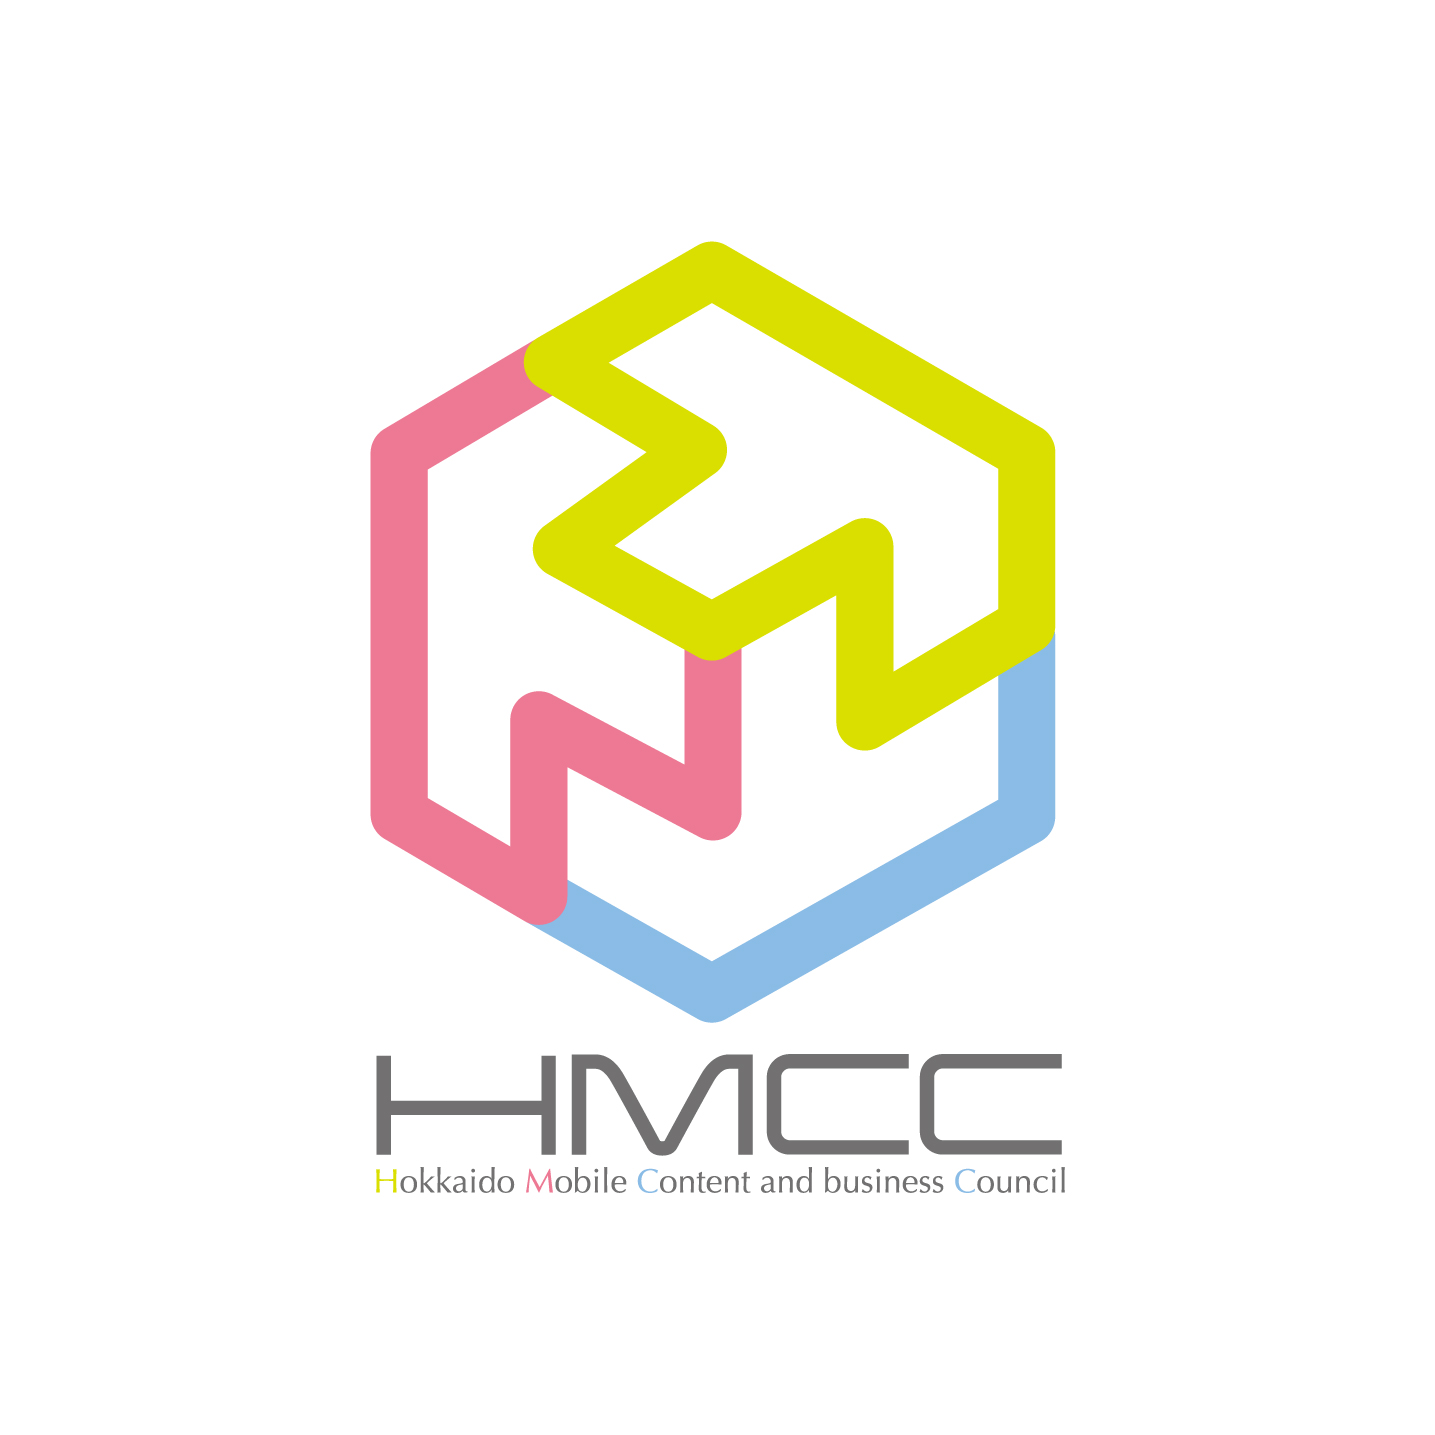 弊社代表が「一般社団法人北海道モバイルコンテンツ・ビジネス協議会(HMCC)」の理事に就任いたしました。